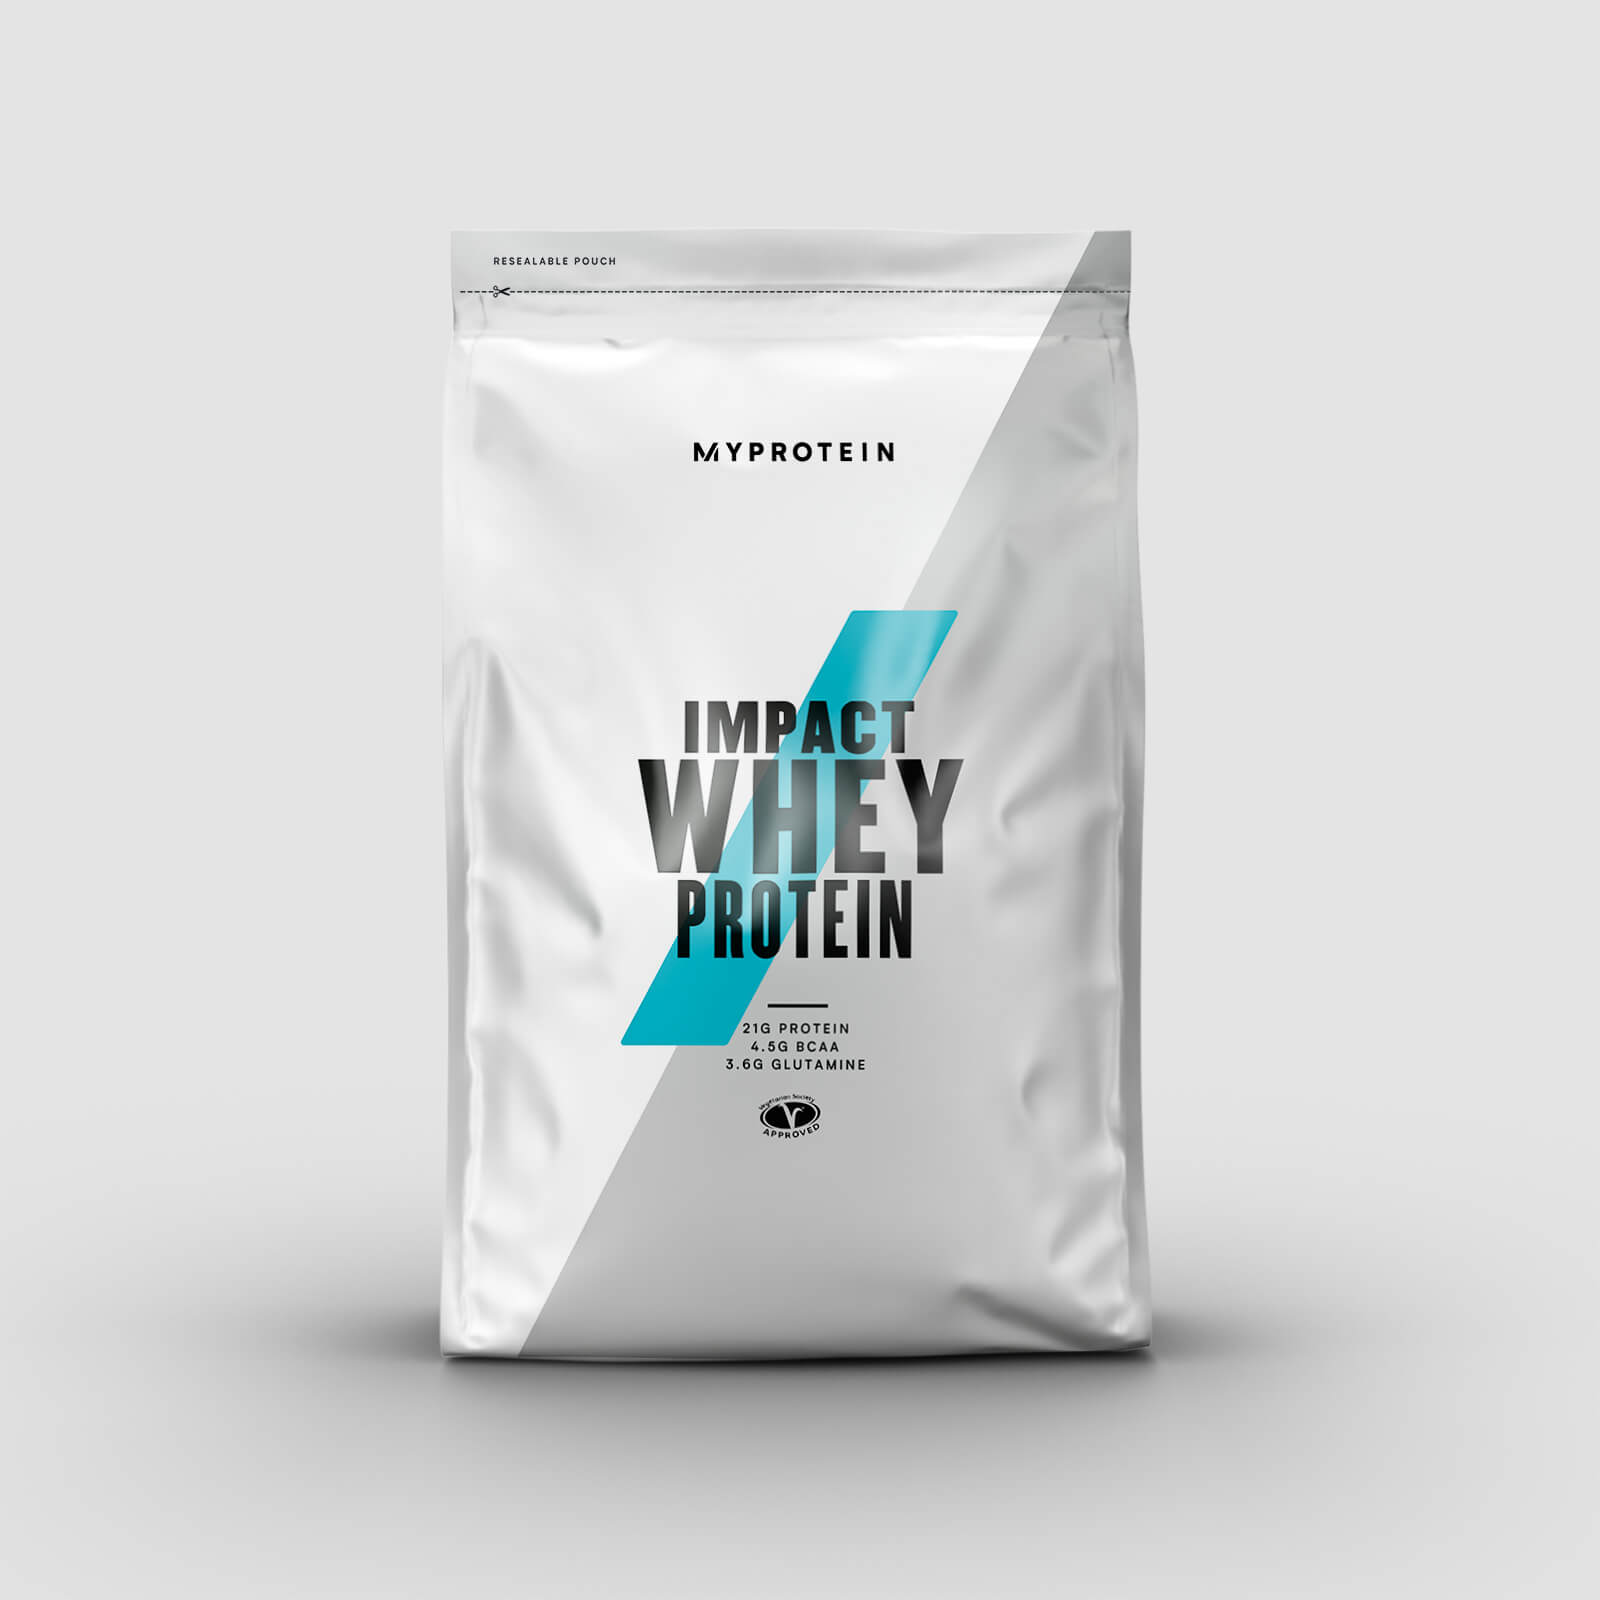 Myprotein Vassleprotein - Impact Whey Protein - 1kg - Vanilla